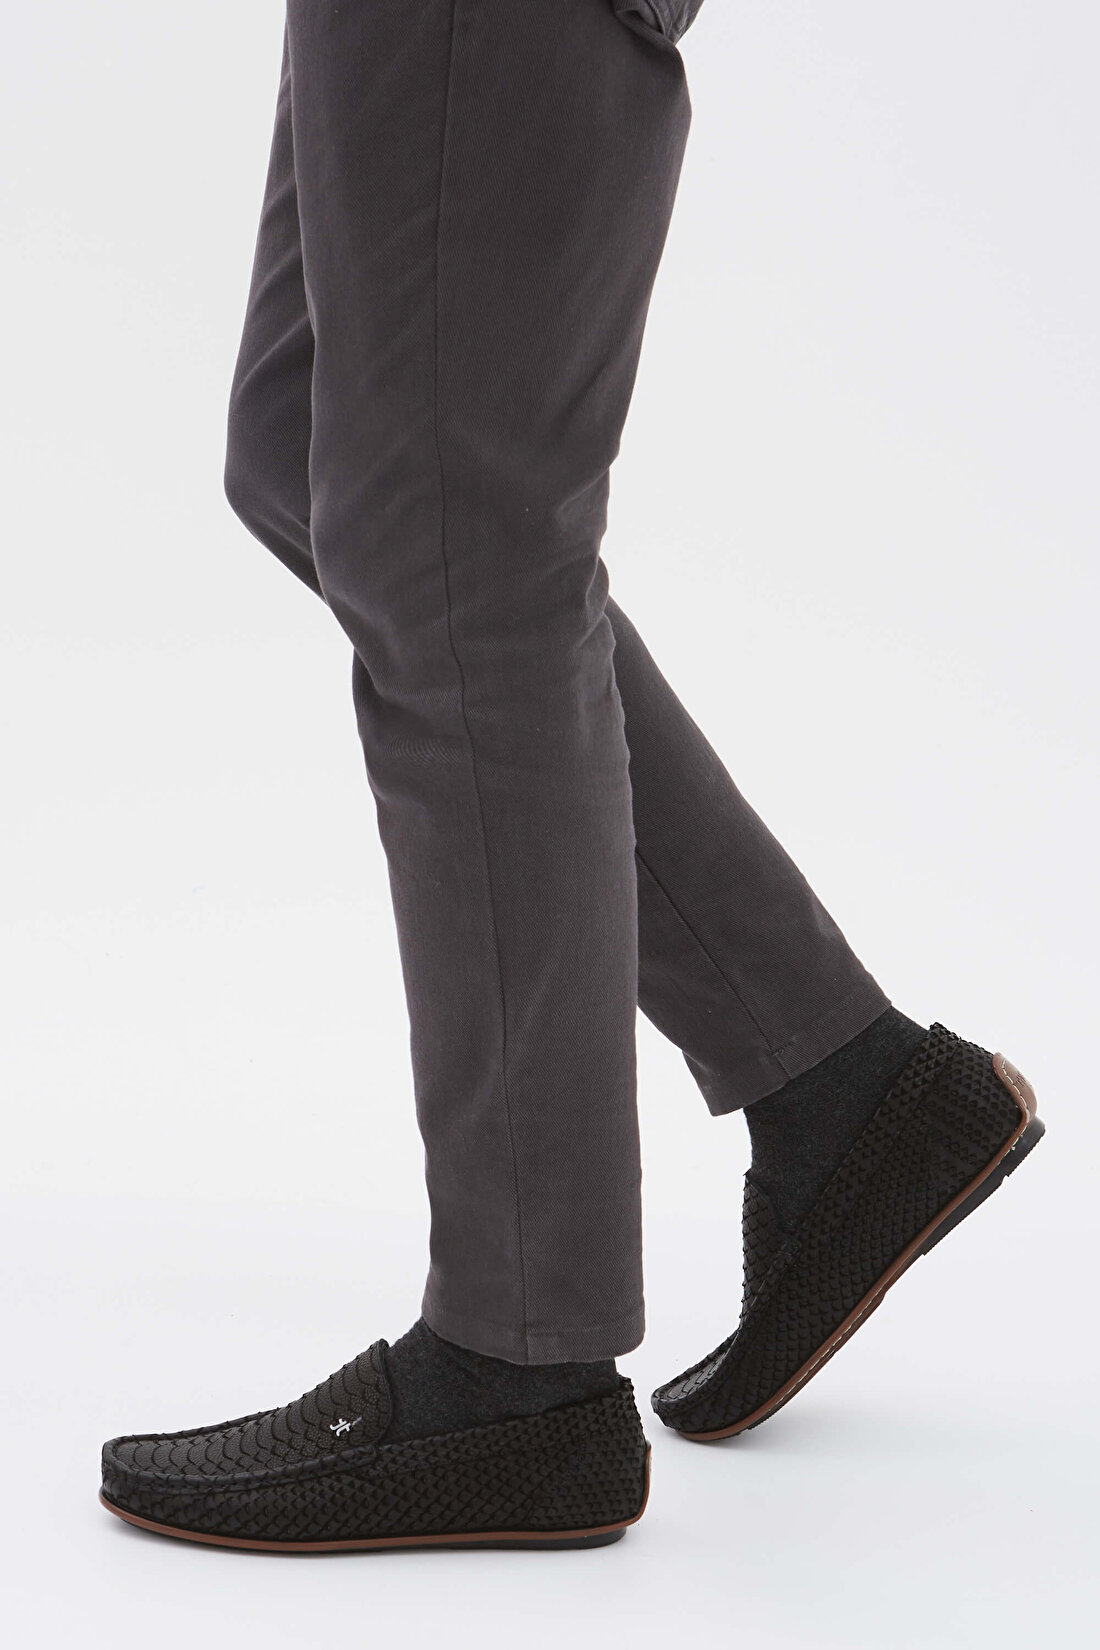 Tamer Tanca Erkek Hakiki Deri Siyah Yılan Desen Loafer Ayakkabı